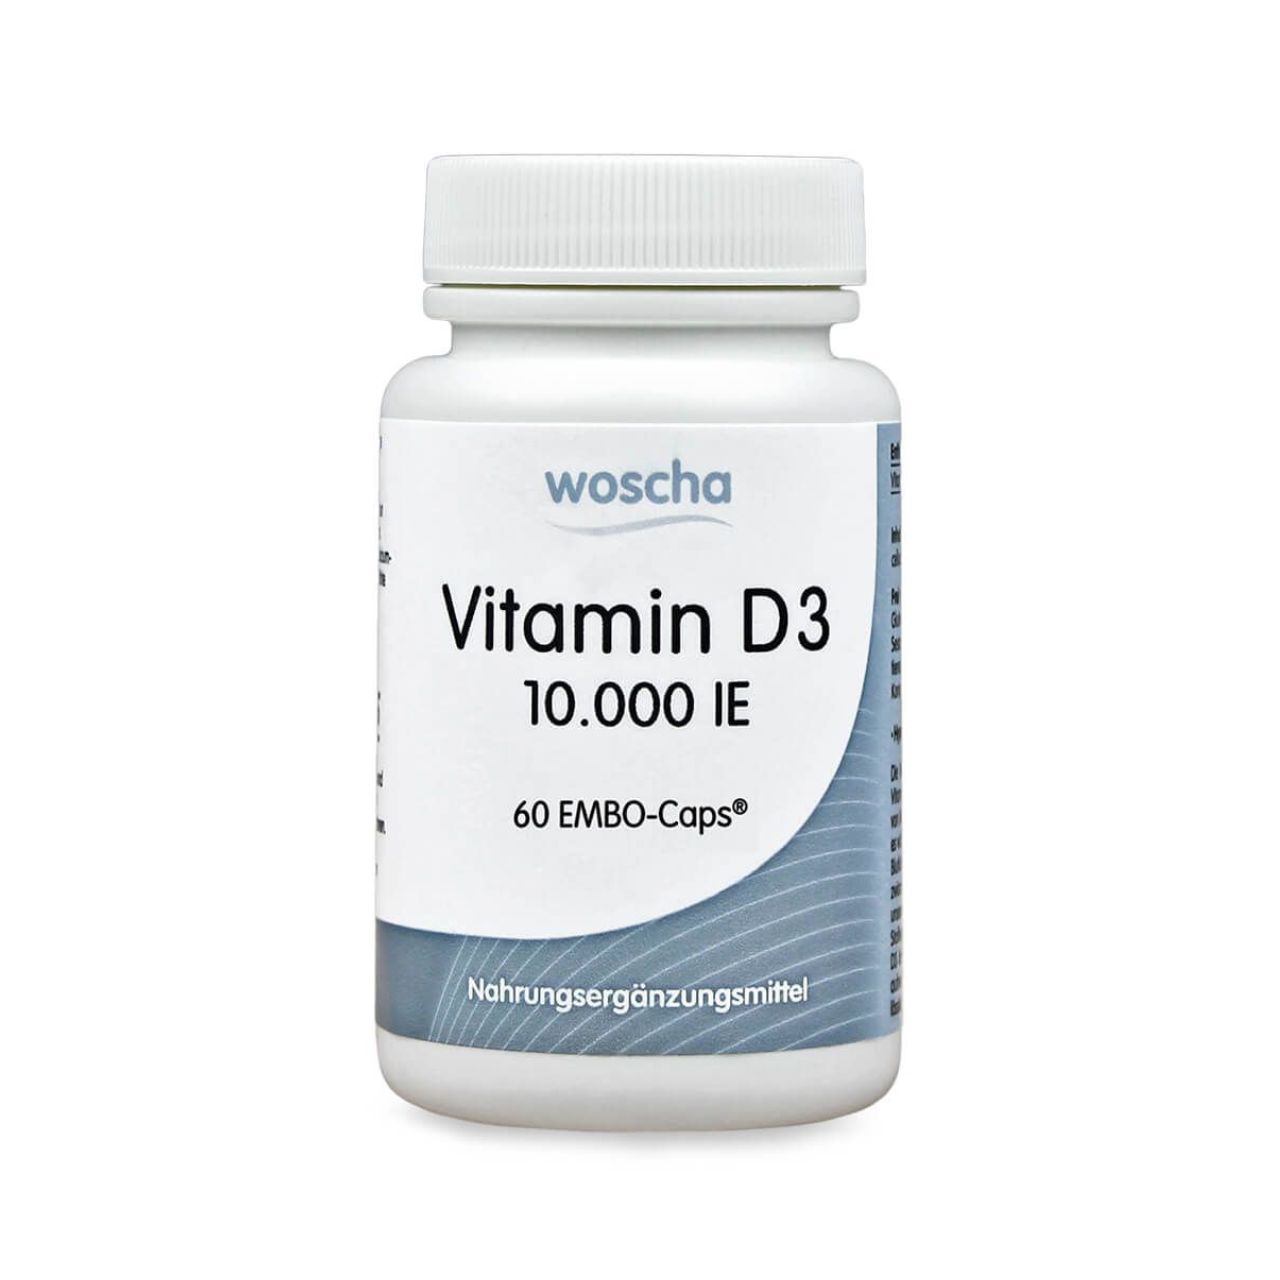 Woscha Vitamin D3 10.000 IE von podo medi beinhaltet 60 Kapseln